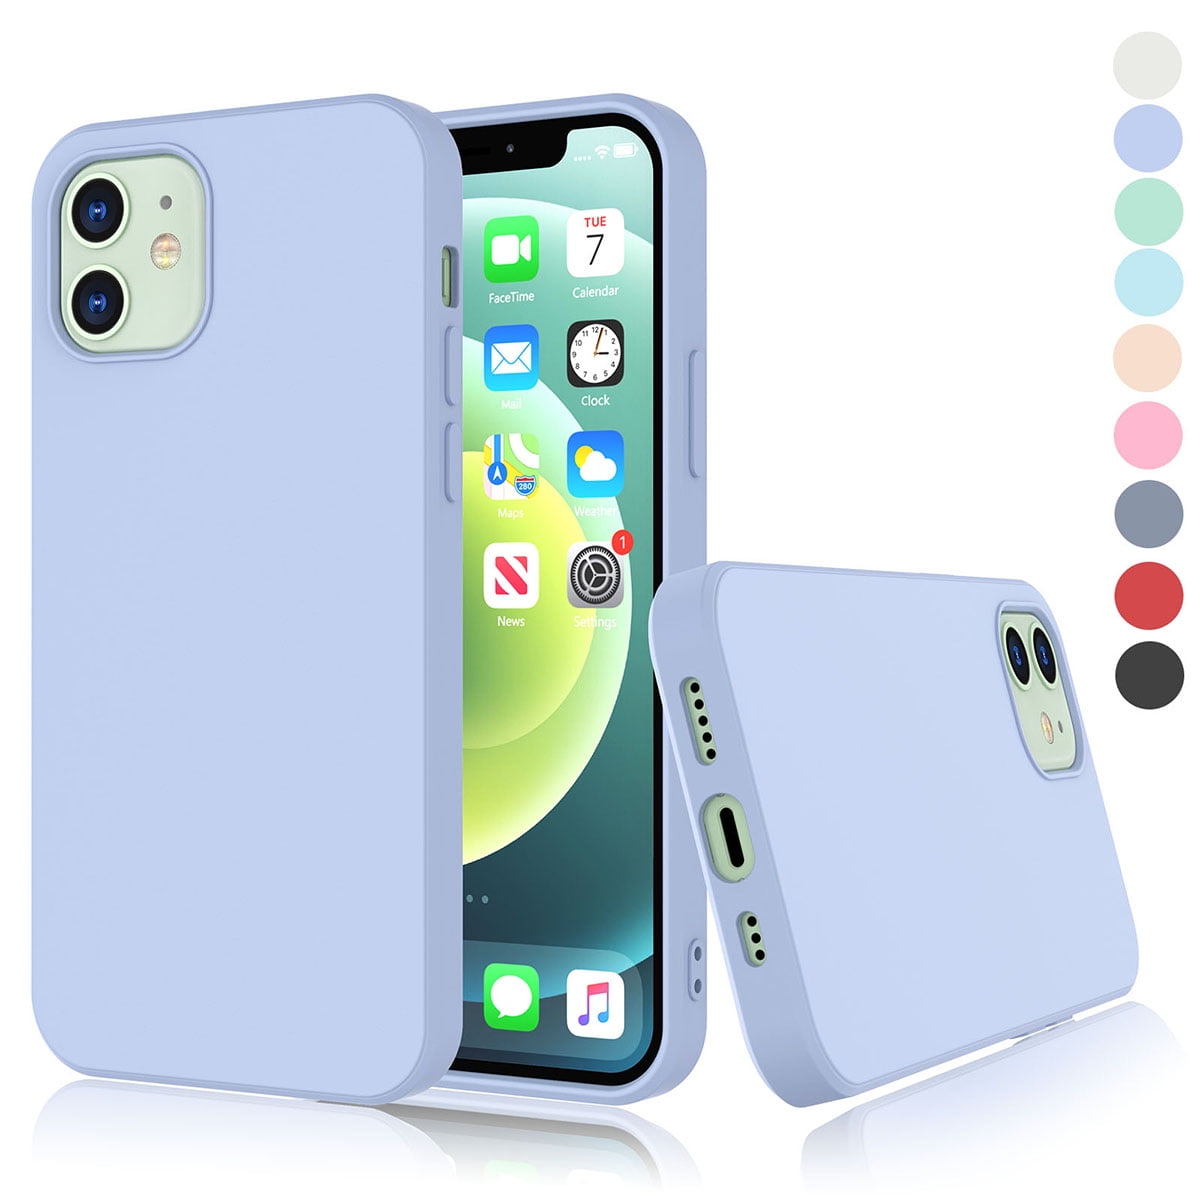 Capa Case Silicone Iphone 12 Mini 5.4 Original - Fujicell